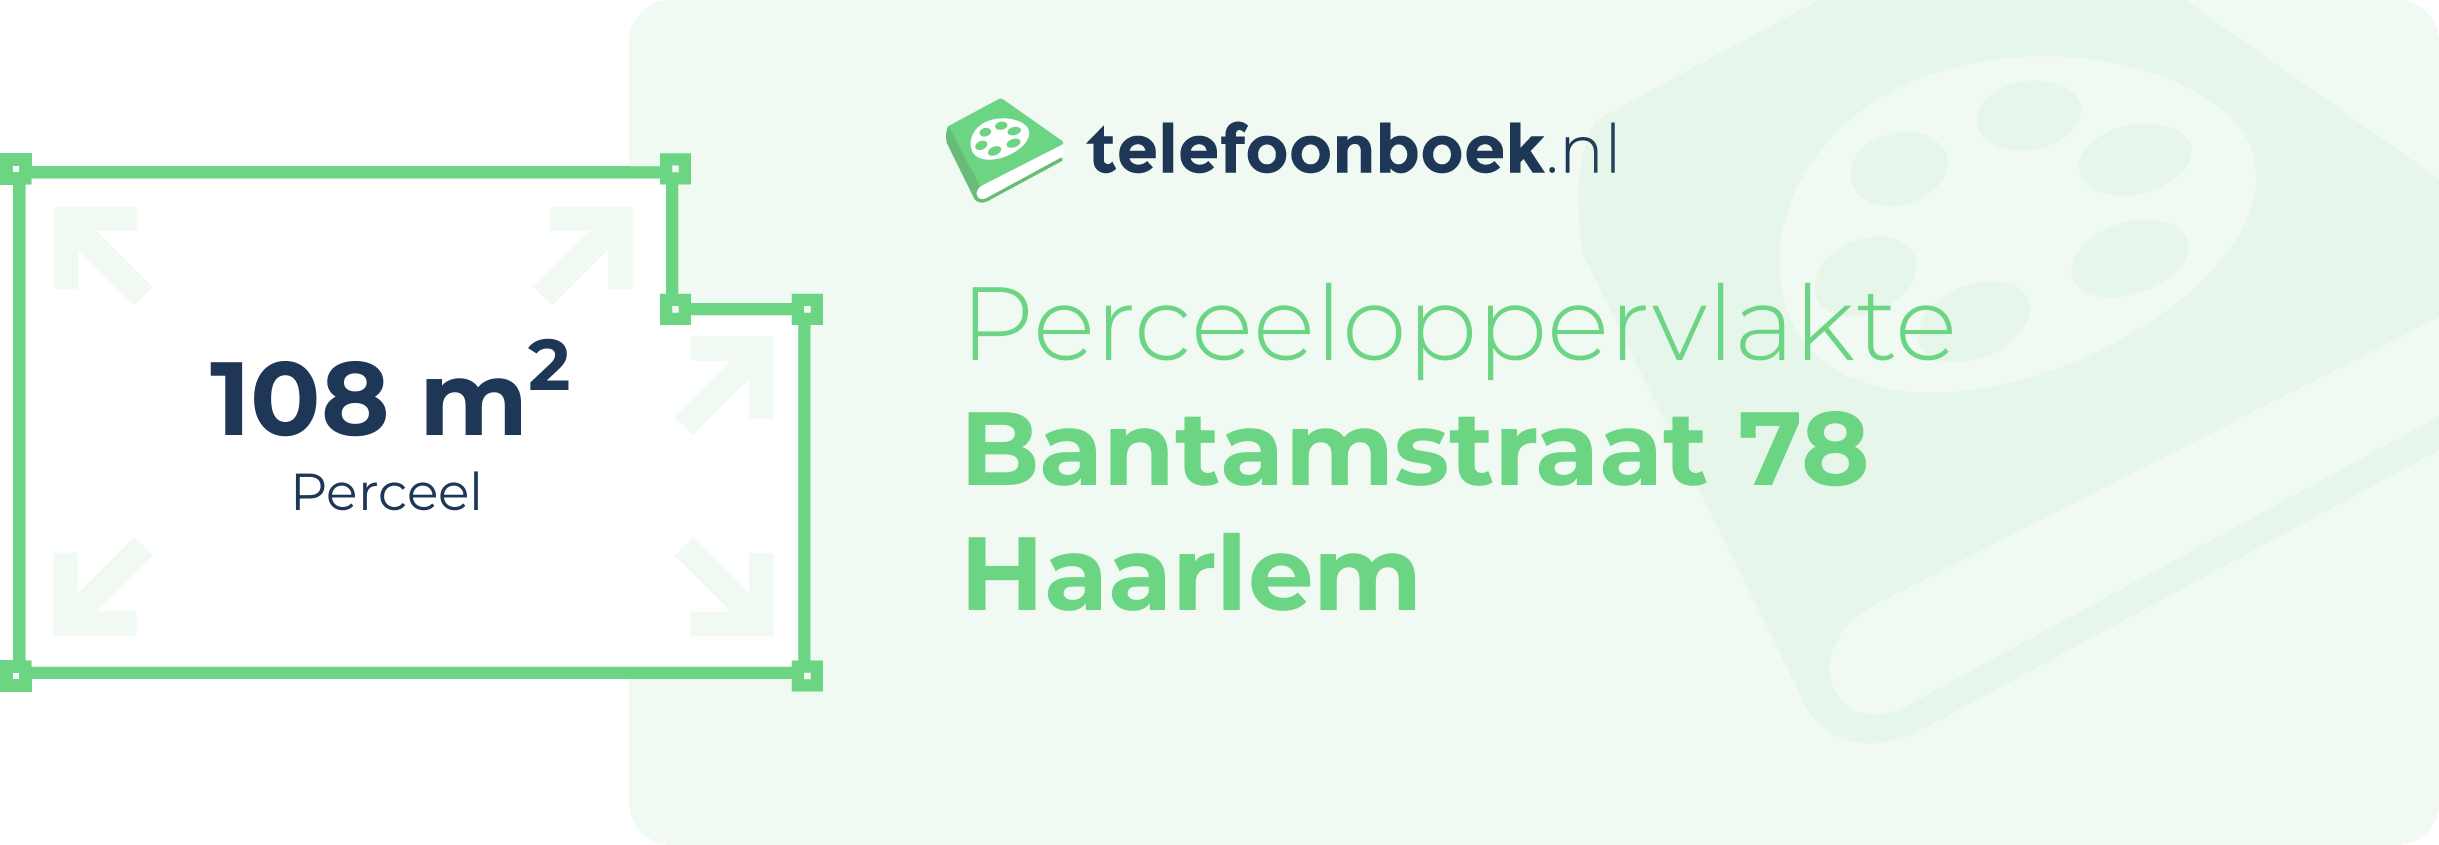 Perceeloppervlakte Bantamstraat 78 Haarlem